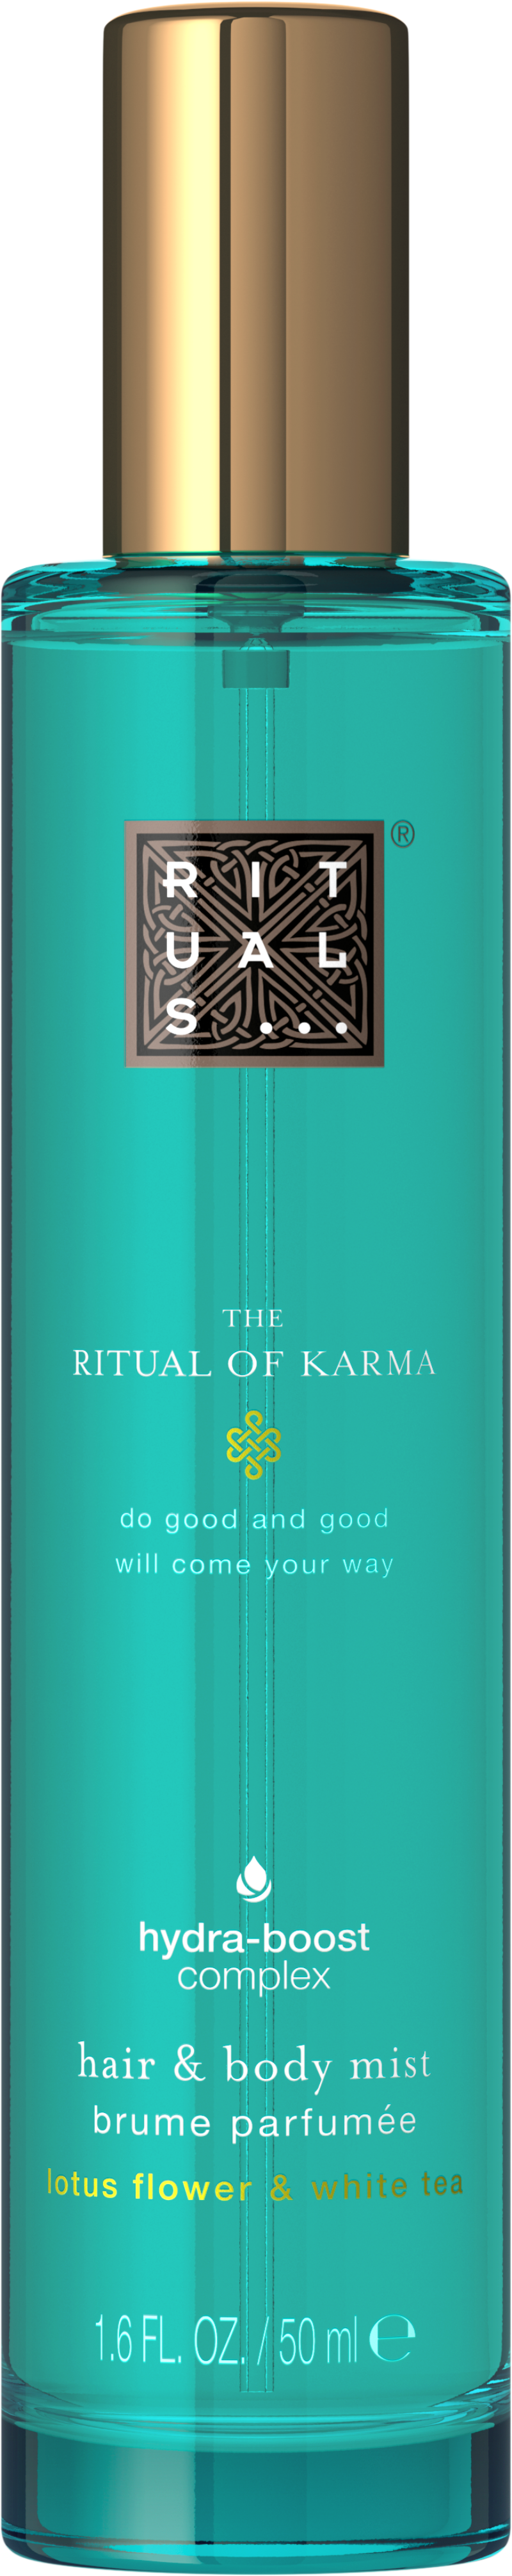 Rituals Hair & Body Mist Karma Review